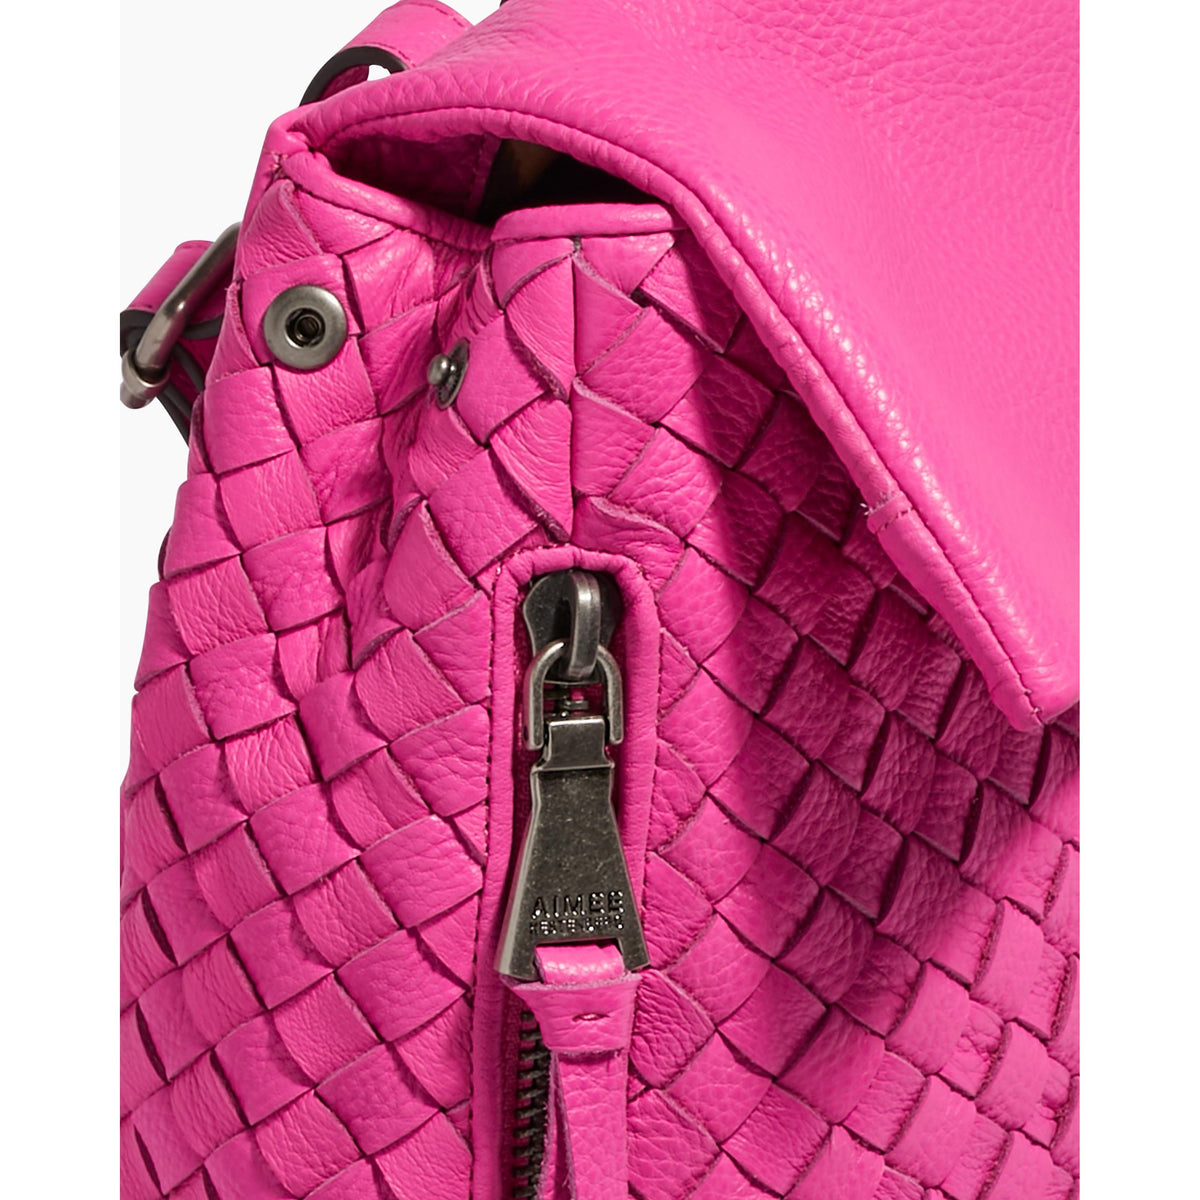 Bali Backpack in Fuchsia Pink